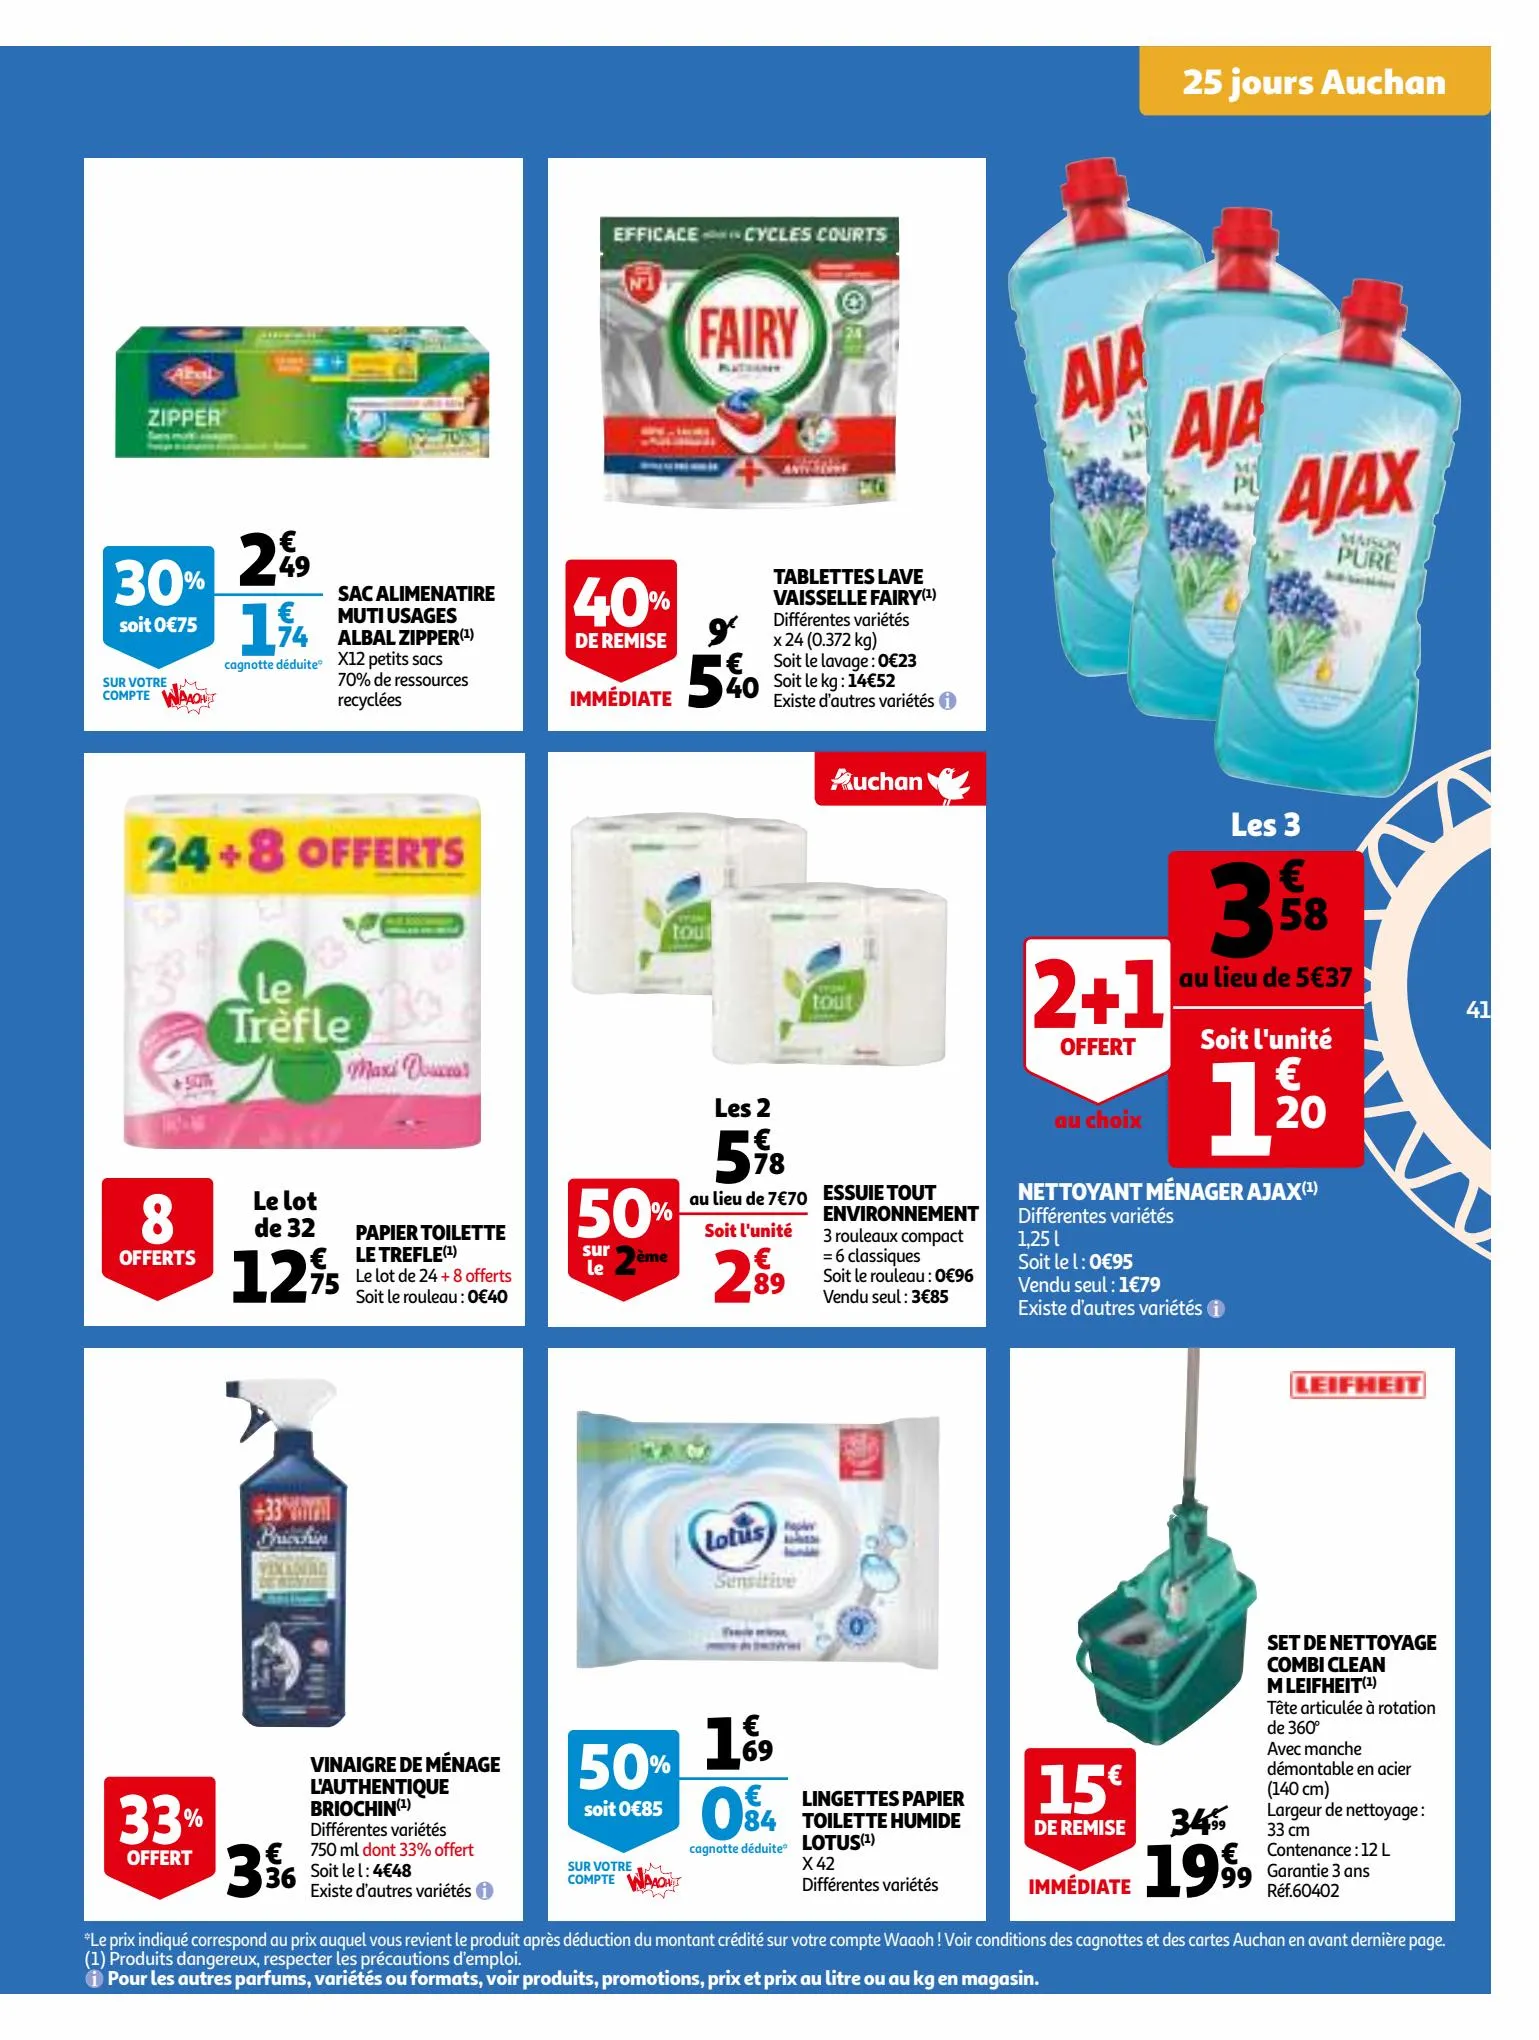 Catalogue 25 Jours Auchan, page 00041